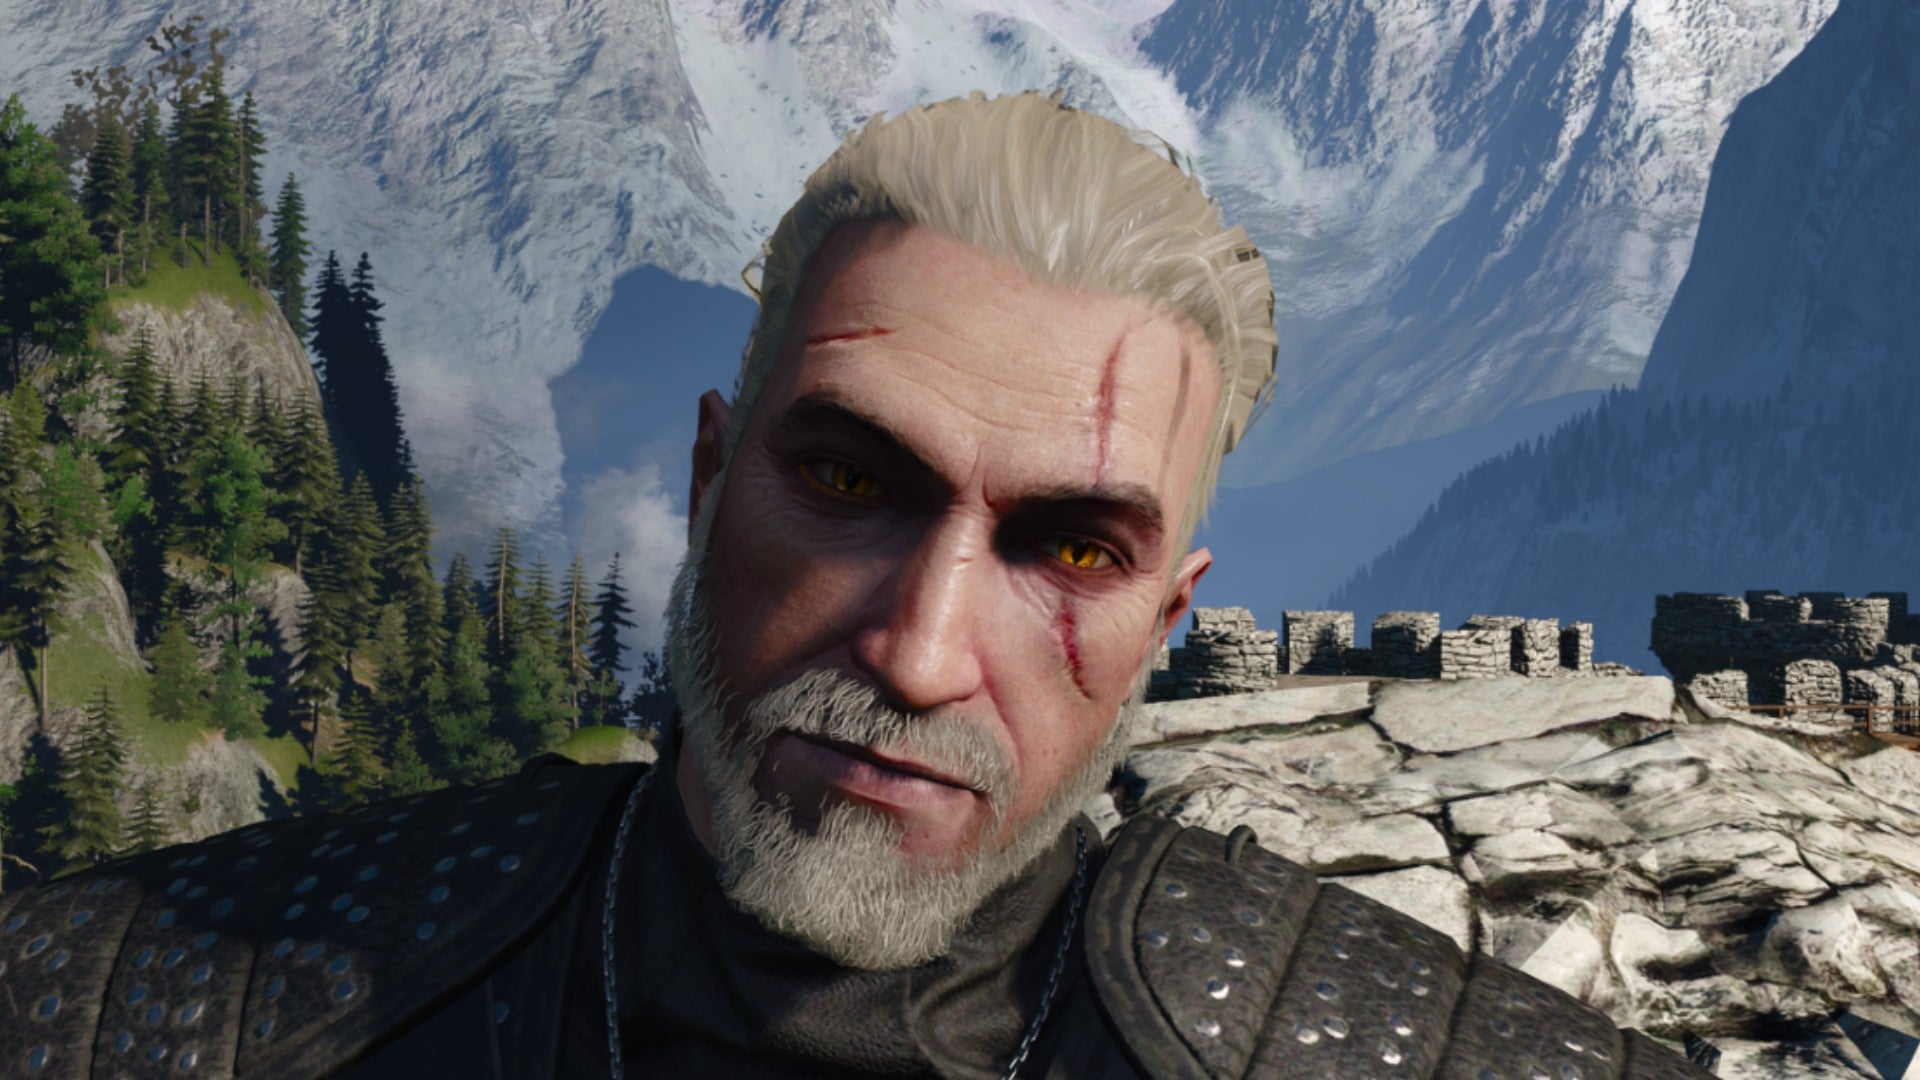 Captura de pantalla de Witcher 3 que muestra el corte de pelo afeitado con cola de caballo de Geralt desde el frente.